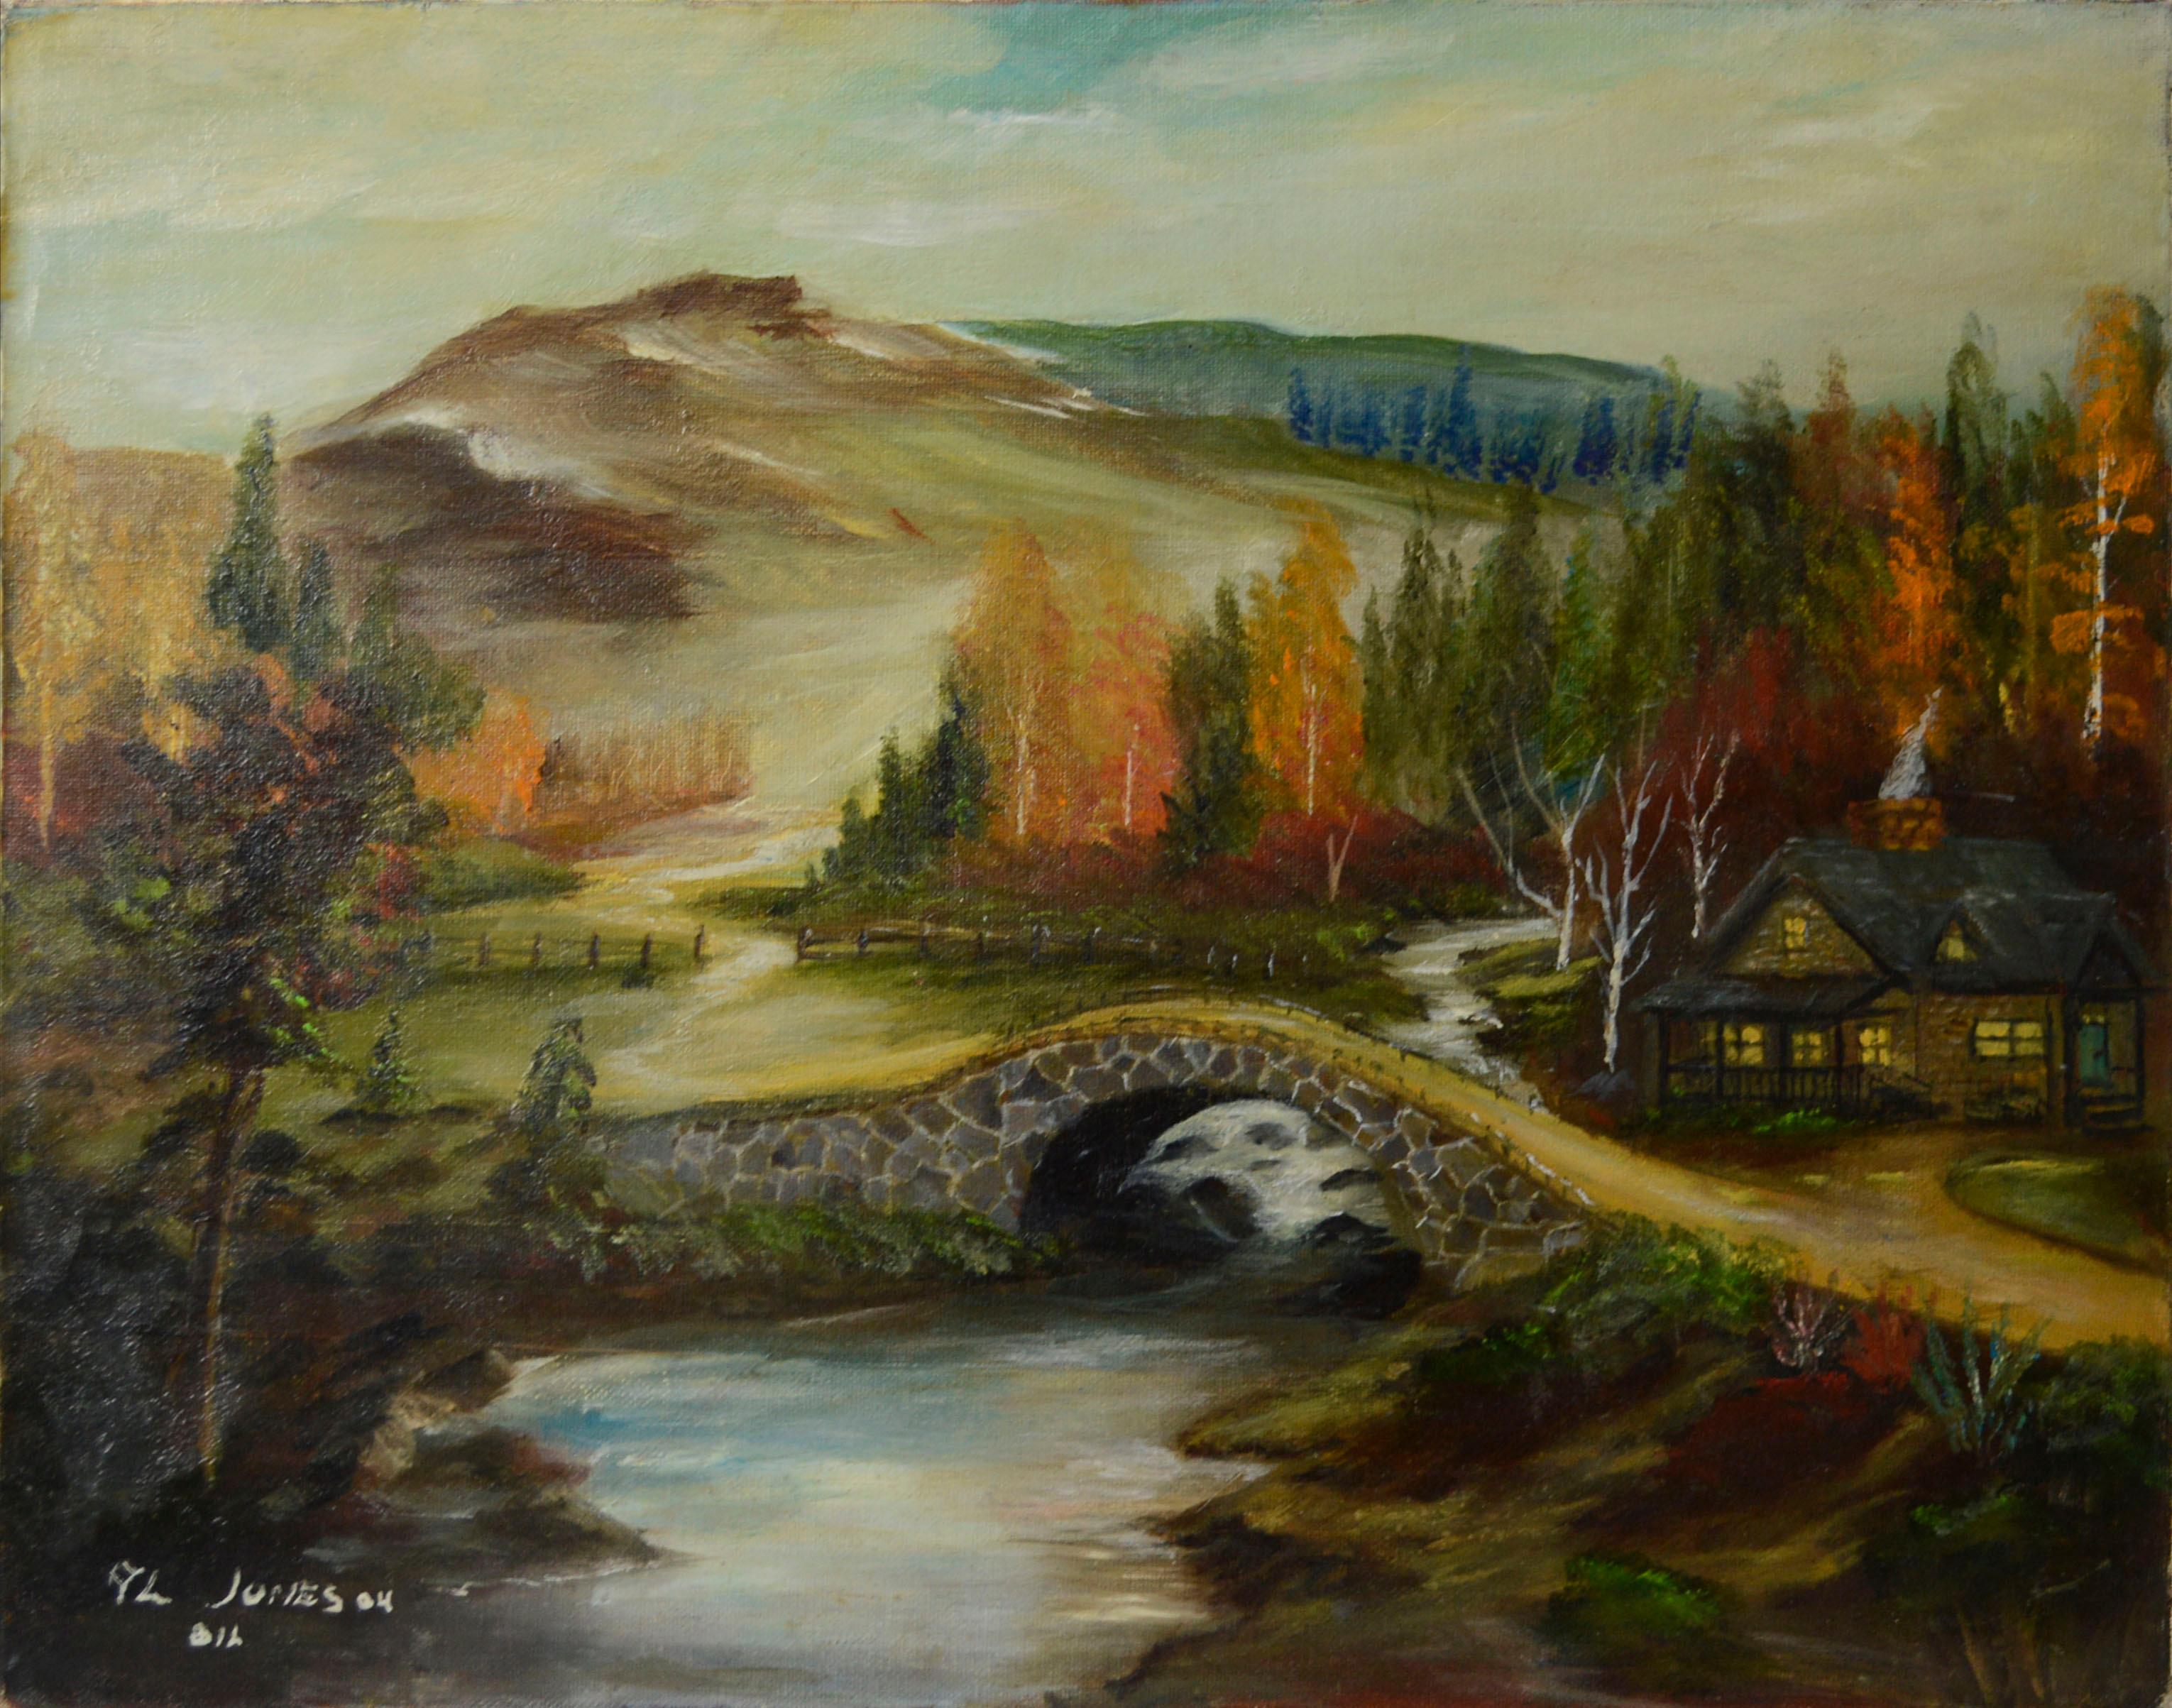 Allen Jones Landscape Painting - Cabin by the River, Autumn Landscape with Stone Bridge